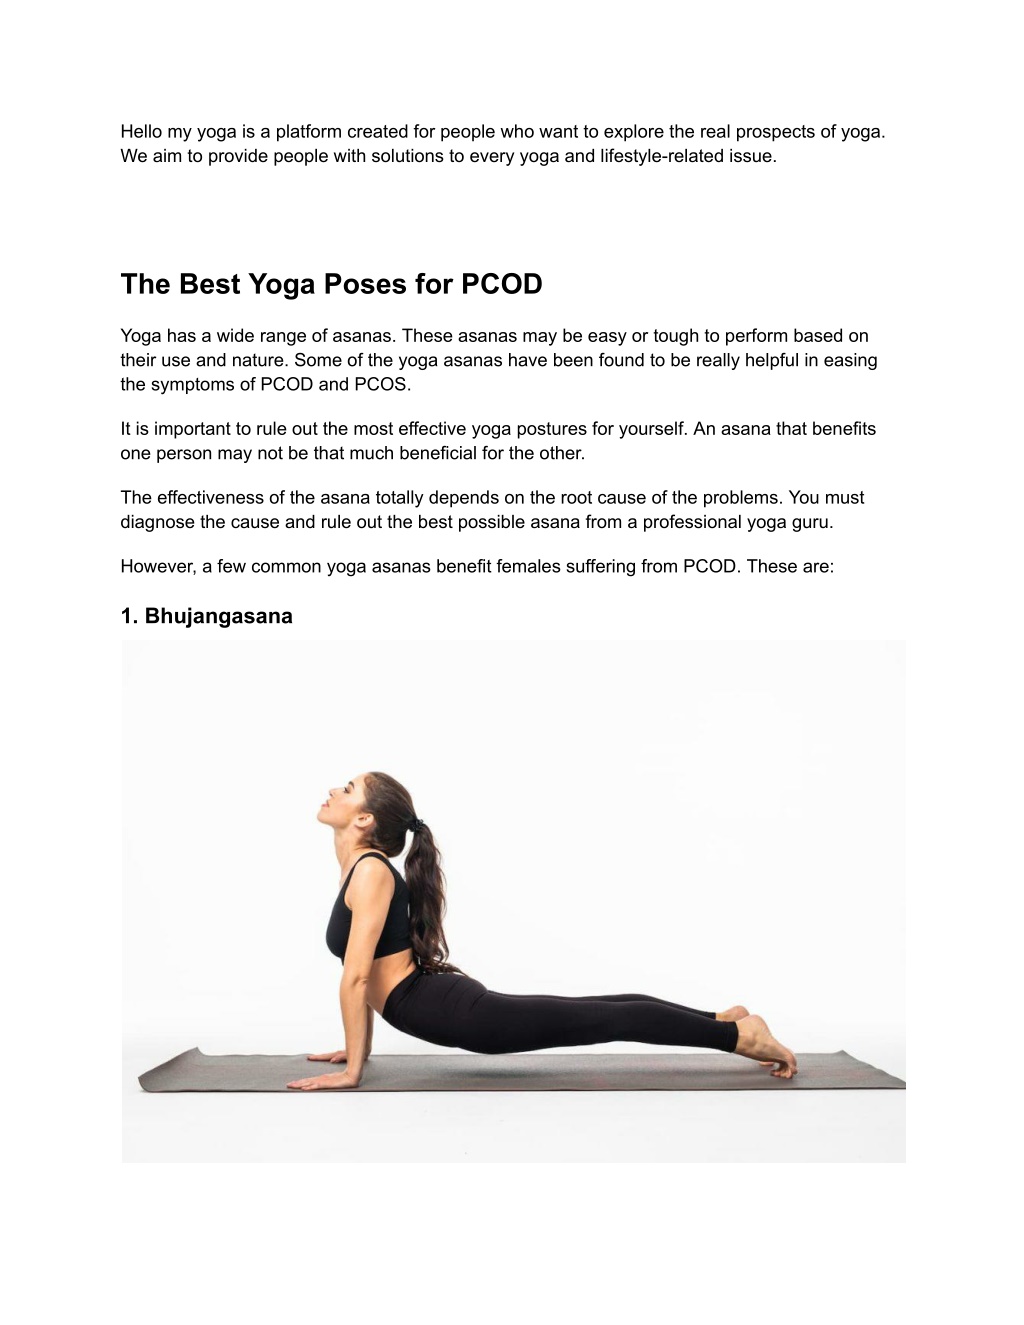 पॉलीसिस्टिक ओवरी सिंड्रोम के लक्षणों से राहत पाने के लिए महिलाएं करें ये 4  योगासन - easy and effective yoga asanas for pcos in hindi – News18 हिंदी